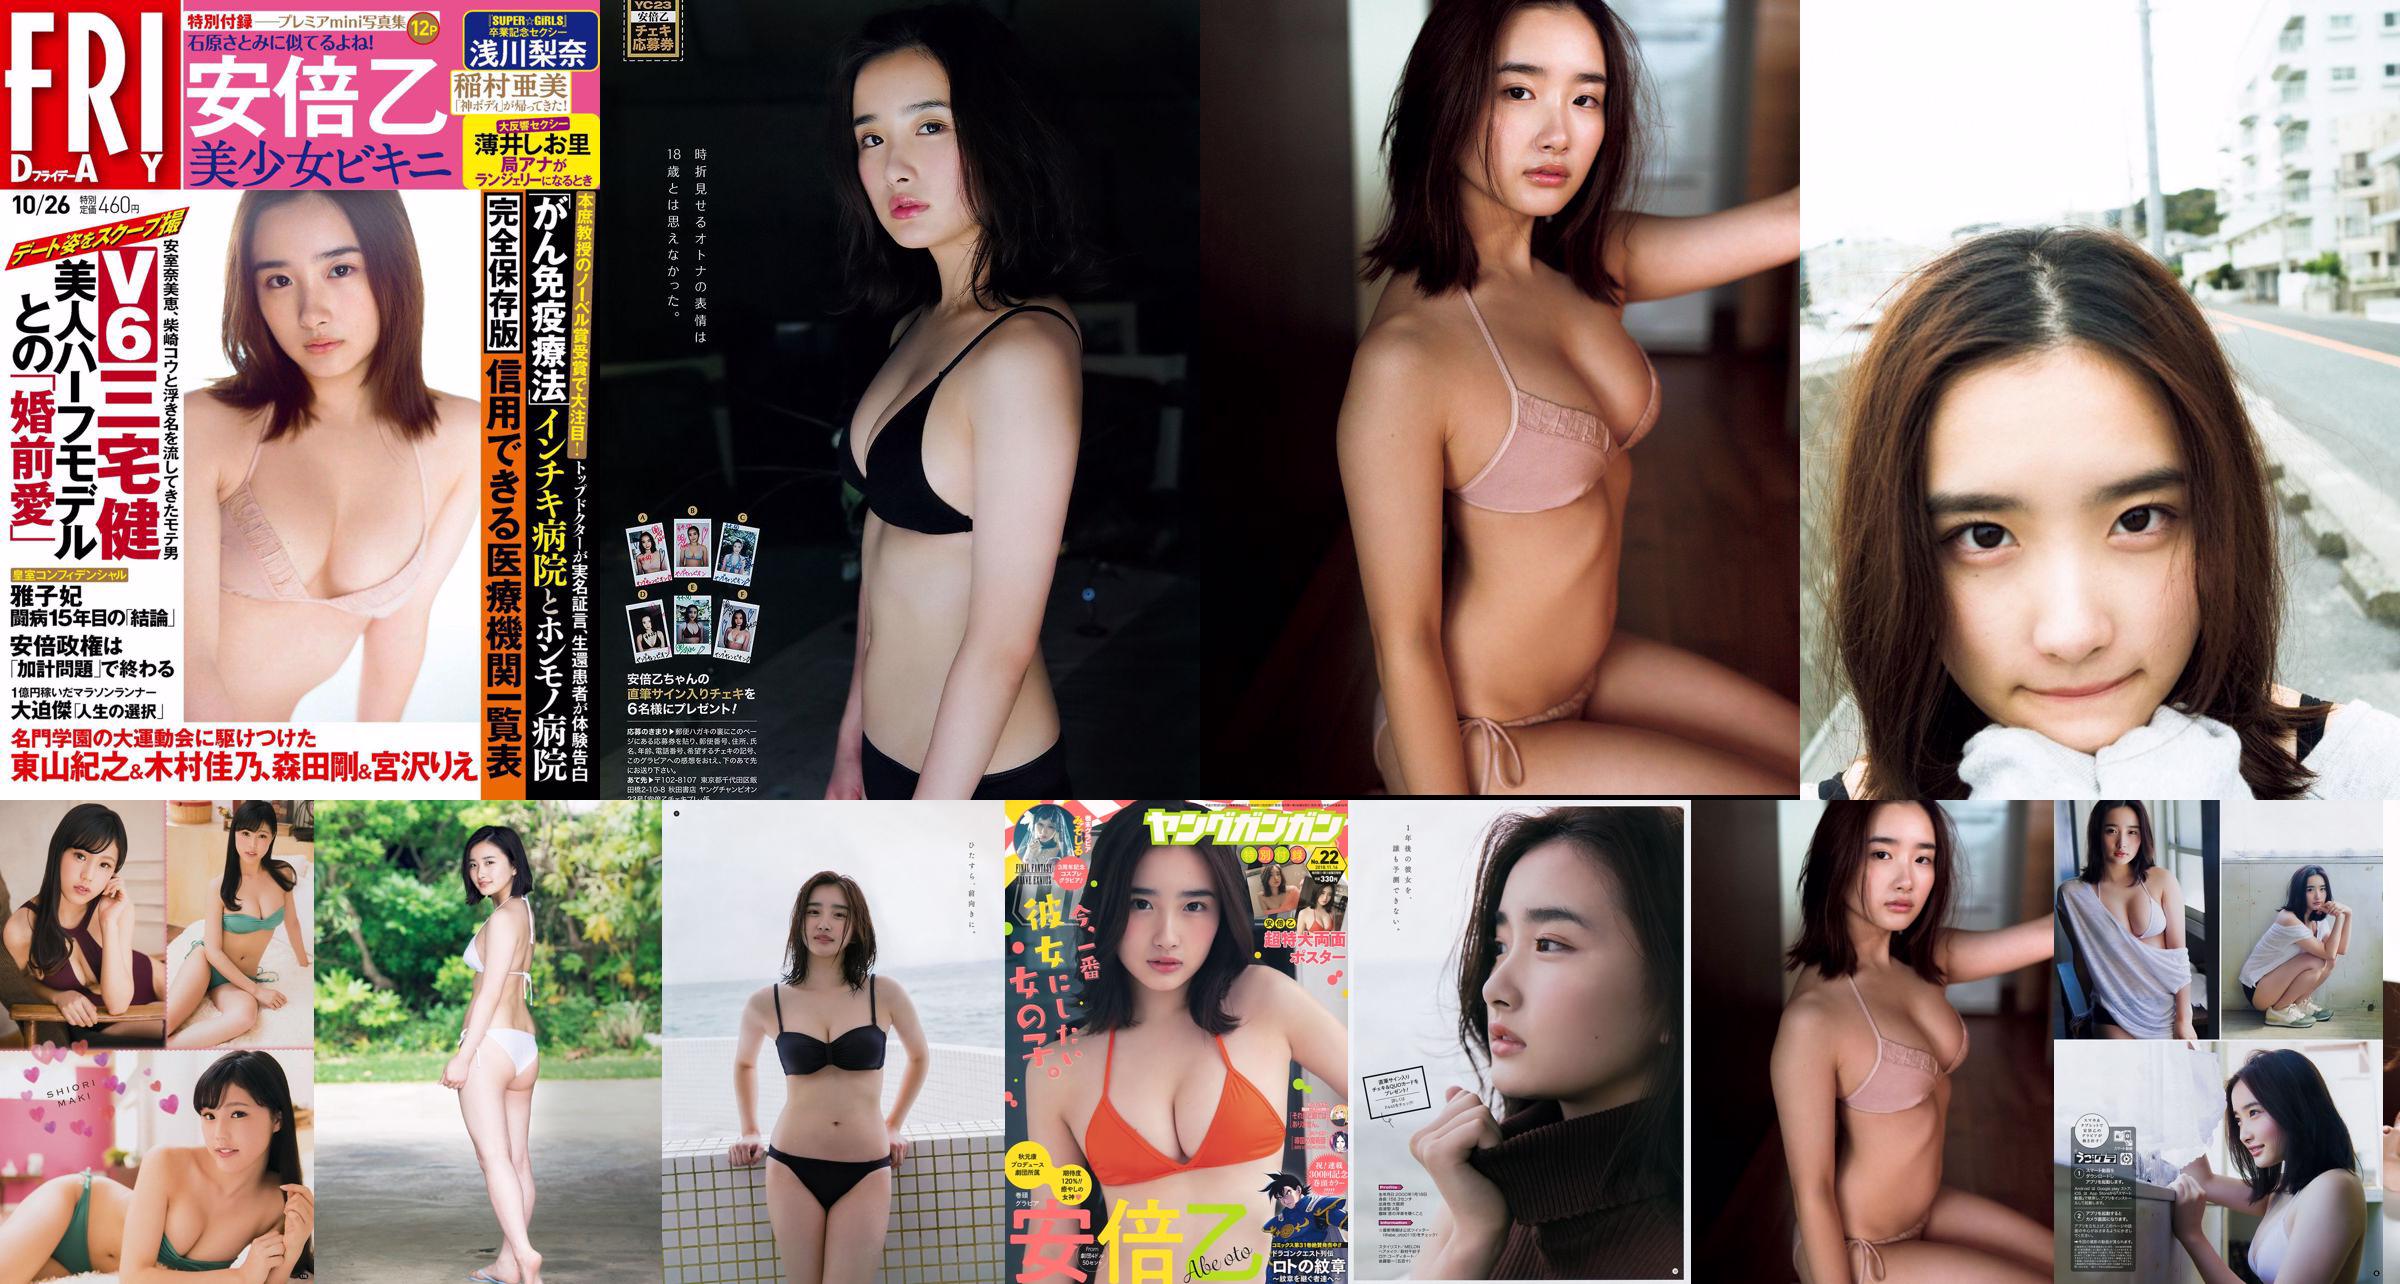 [FRIDAY] Oto Abe "Bishojo Bikini" It looks like Satomi Ishihara "" Photo No.c082f4 Page 1